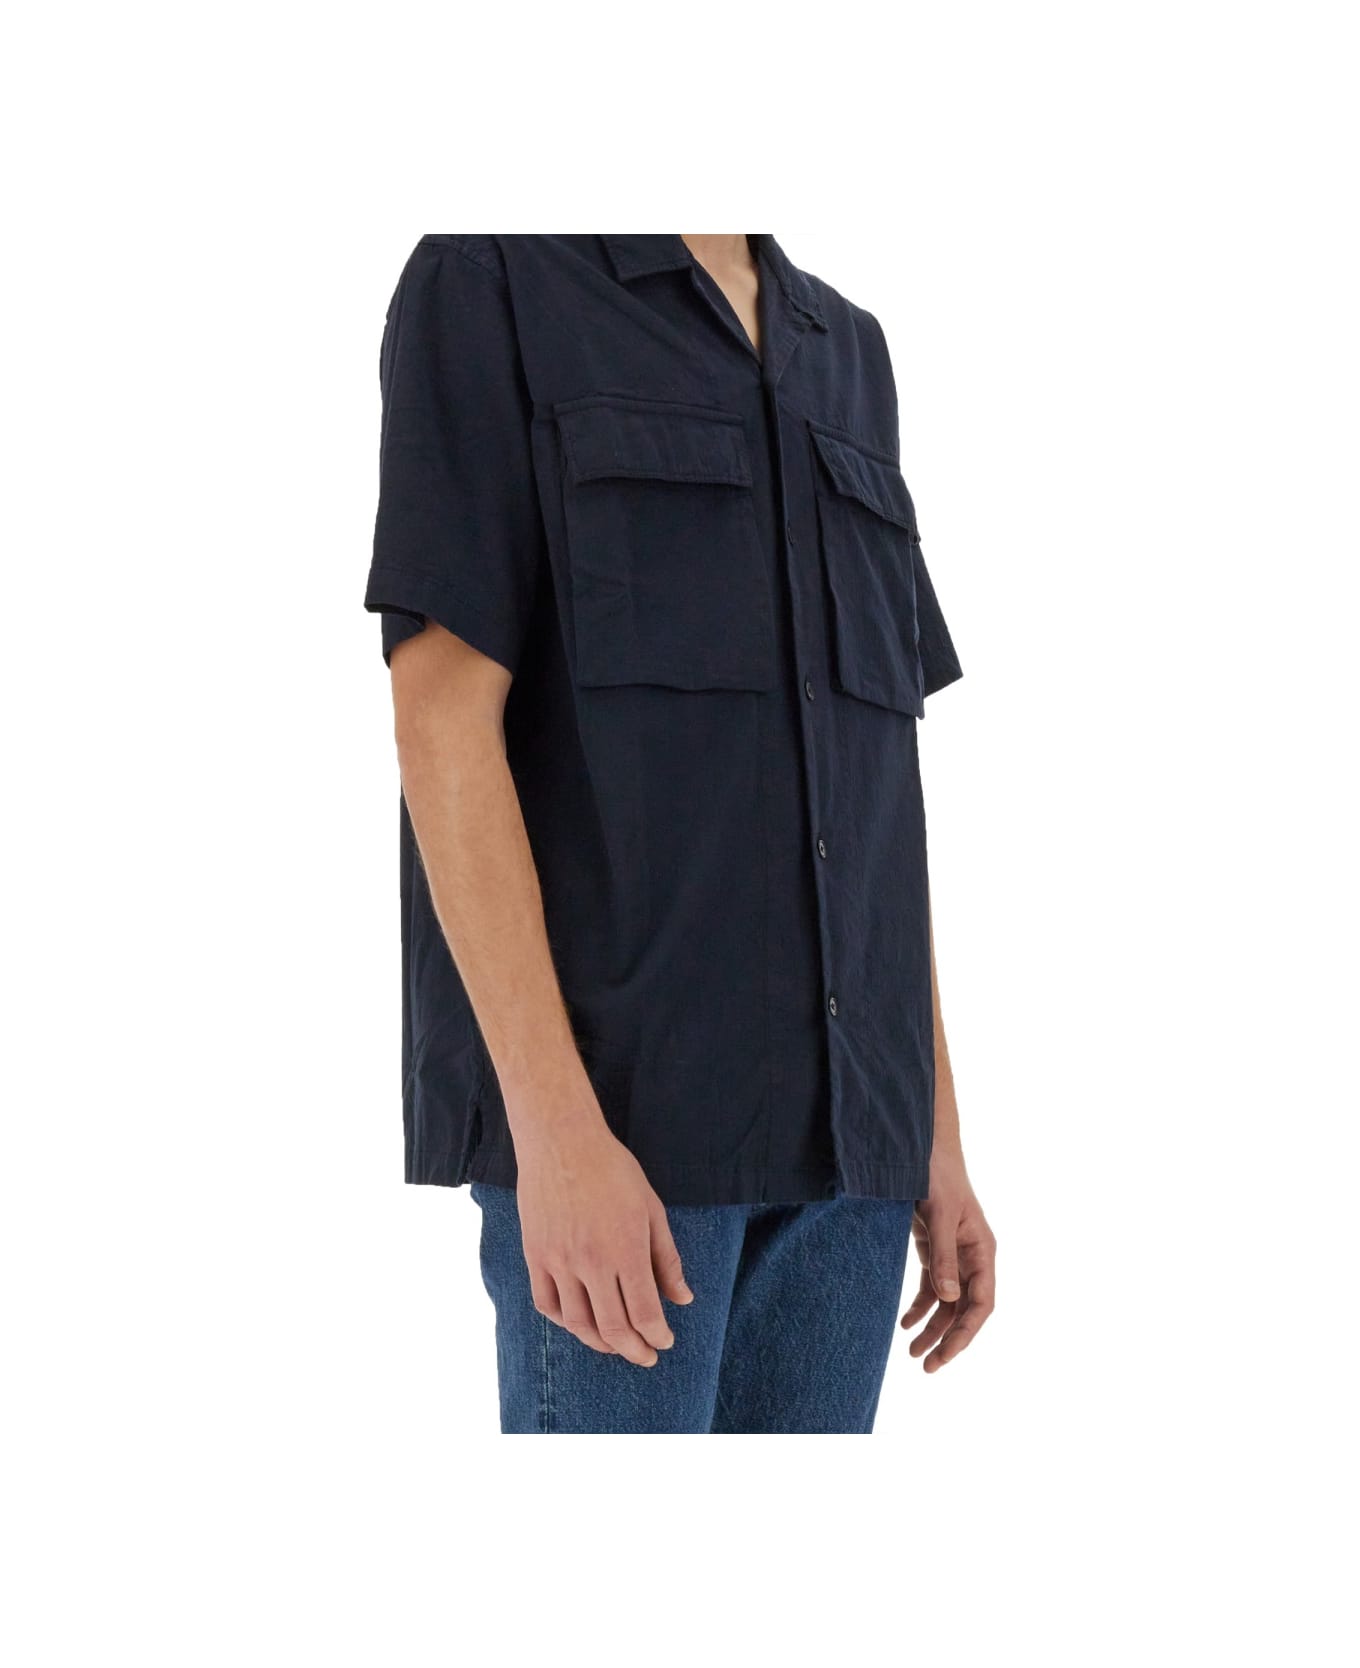 Belstaff Shirt With Pockets - BLUE